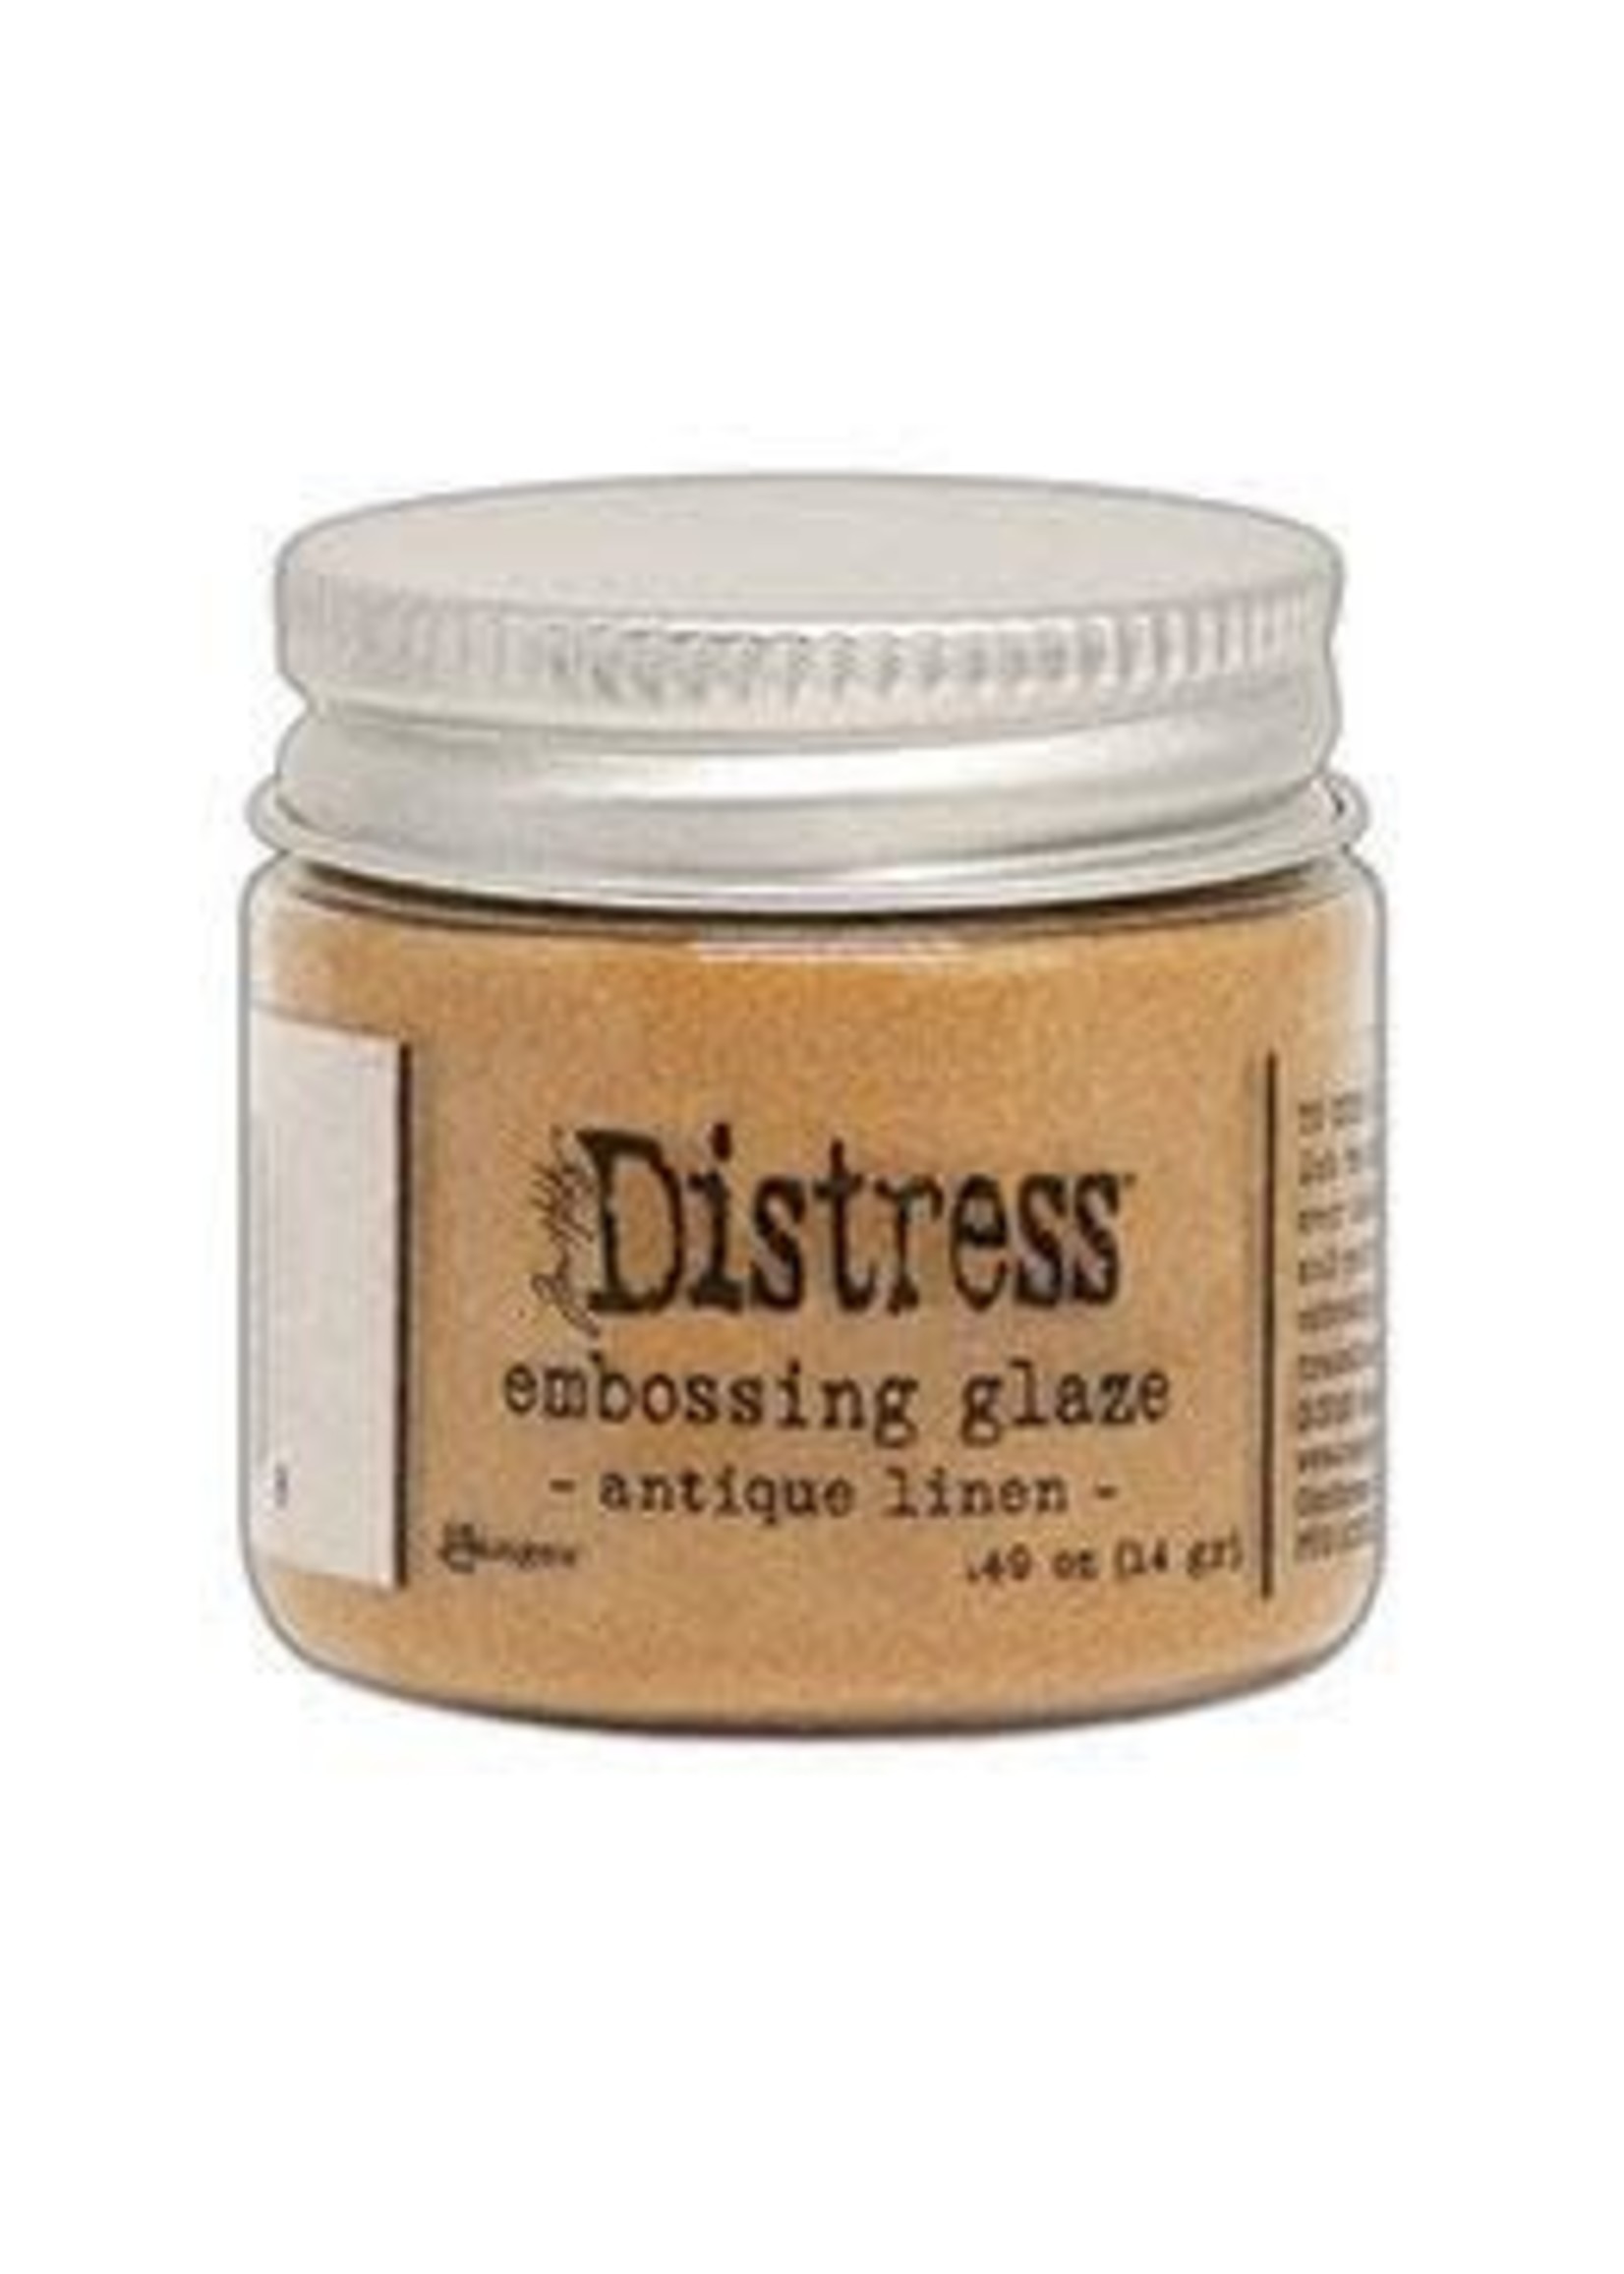 RANGER Distress Embossing Glaze: Antique Linen